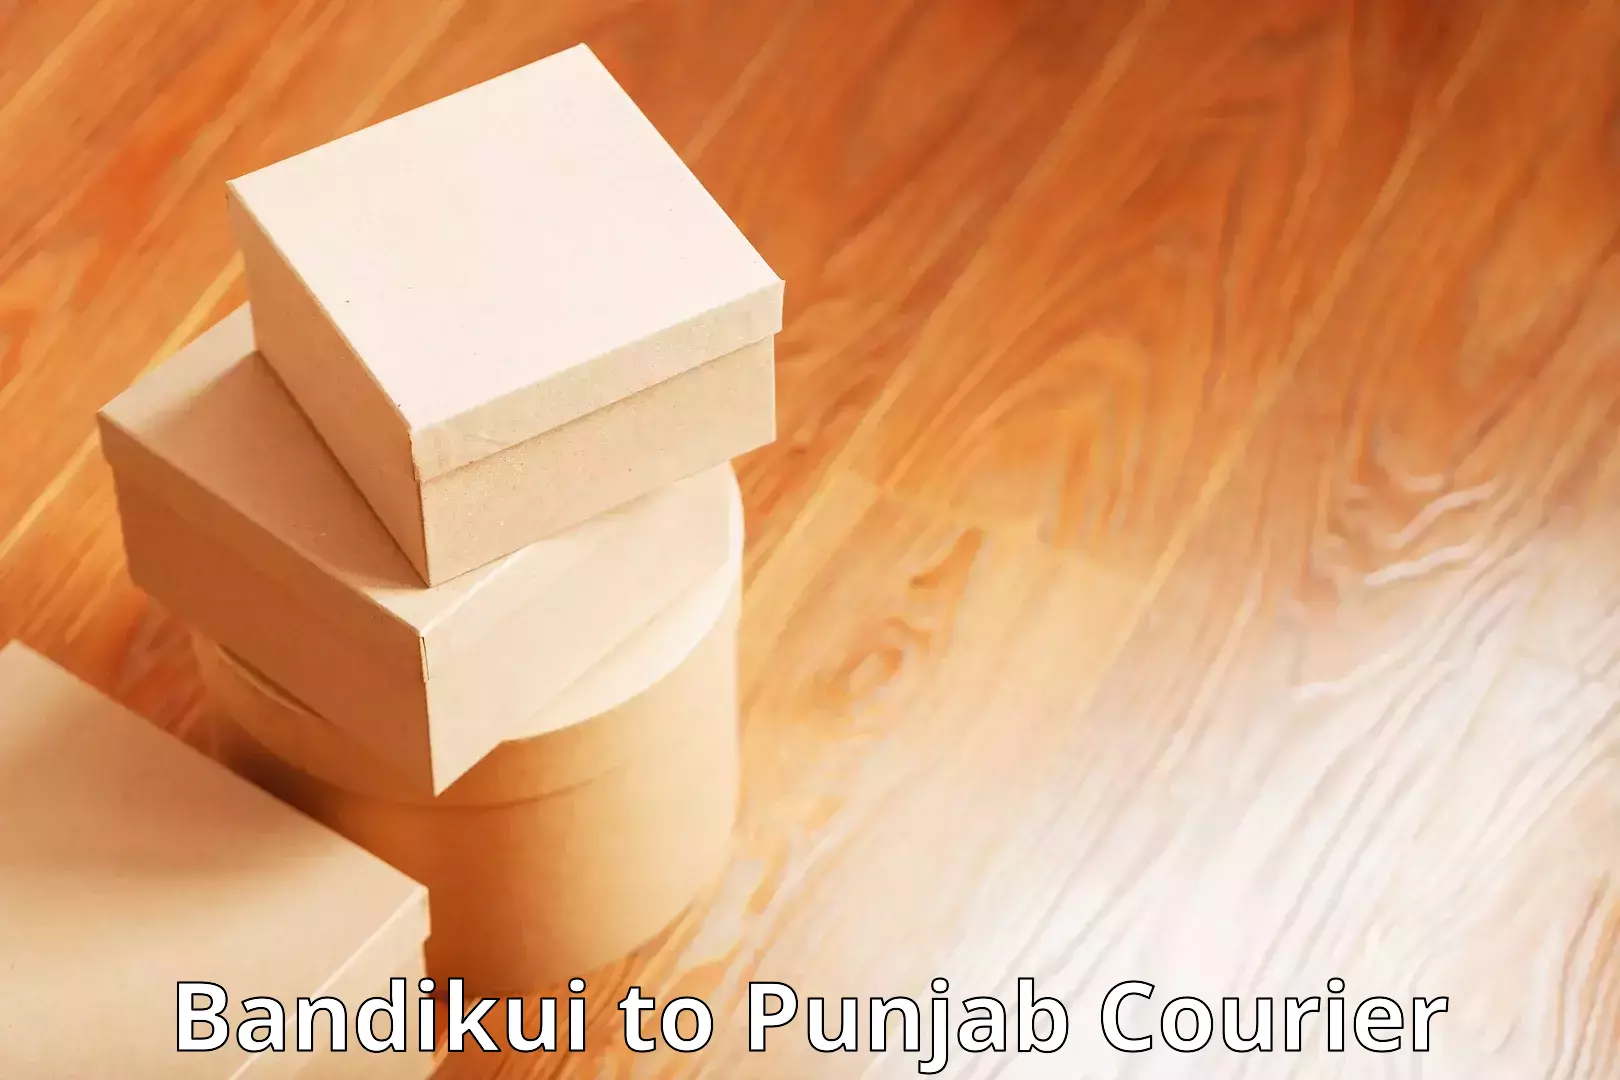 Urban courier service Bandikui to Punjab